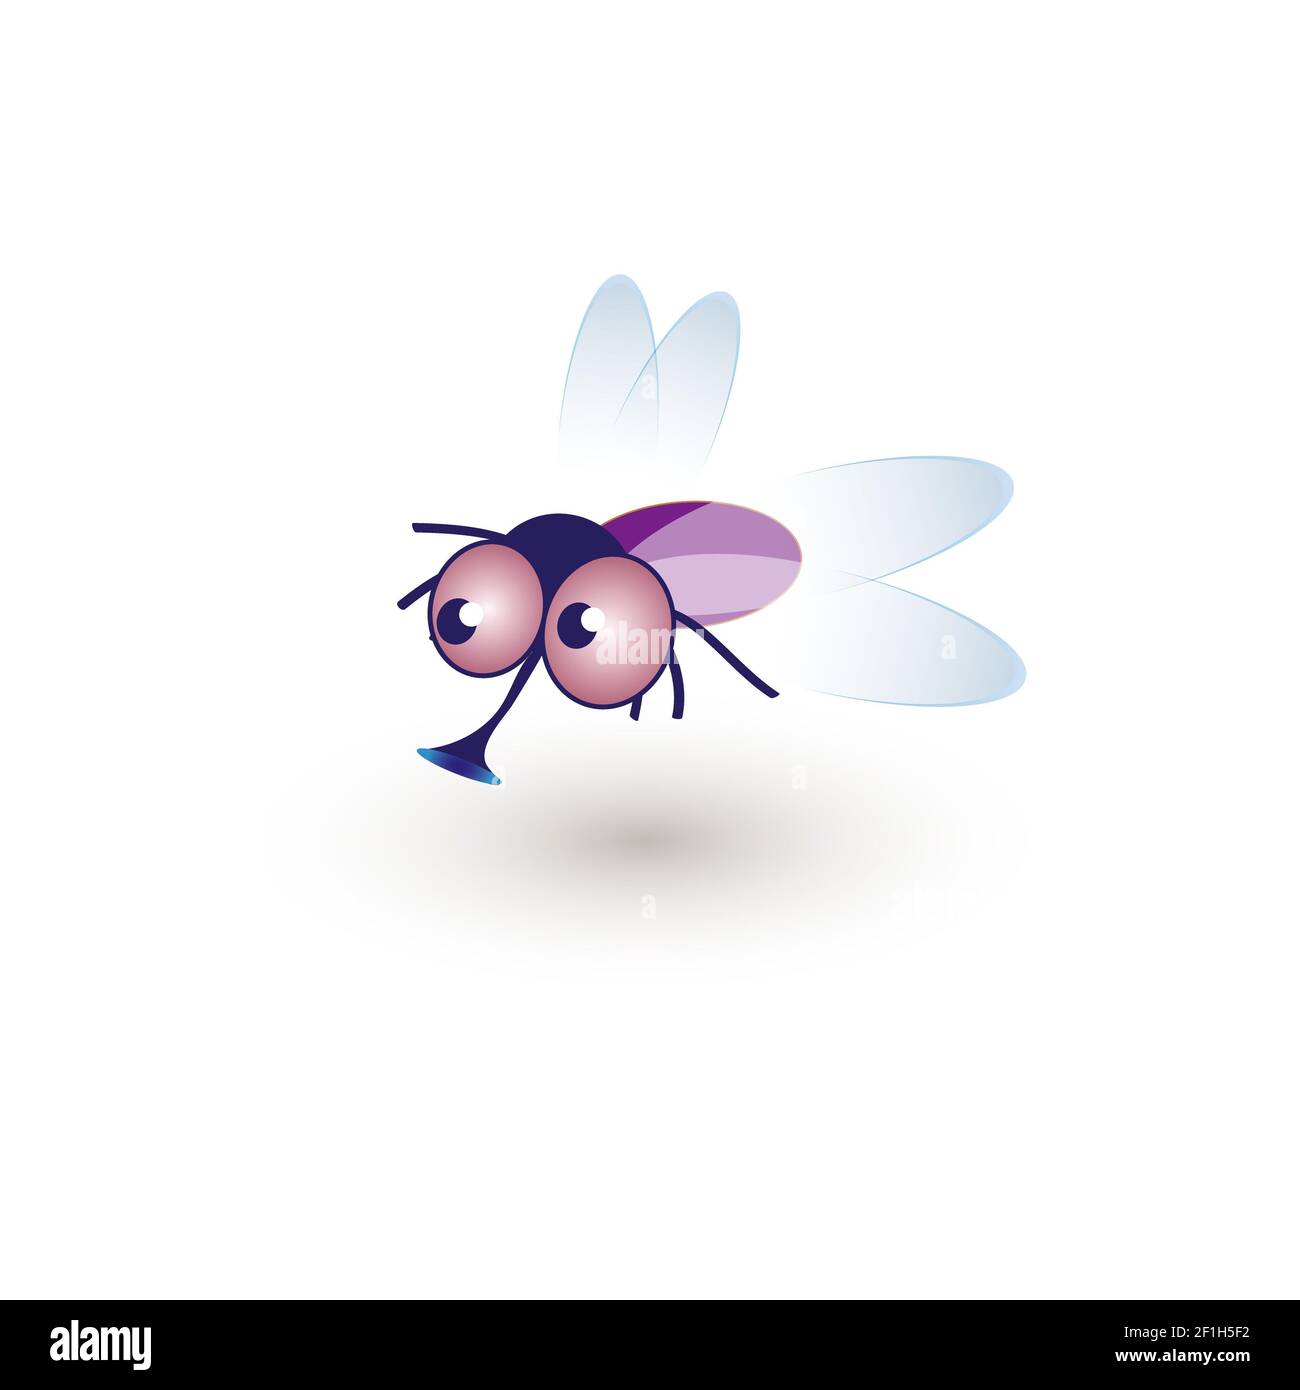 Fumetto Funny Housefly. Illustrazione di una mosca divertente fumante in aria Foto Stock